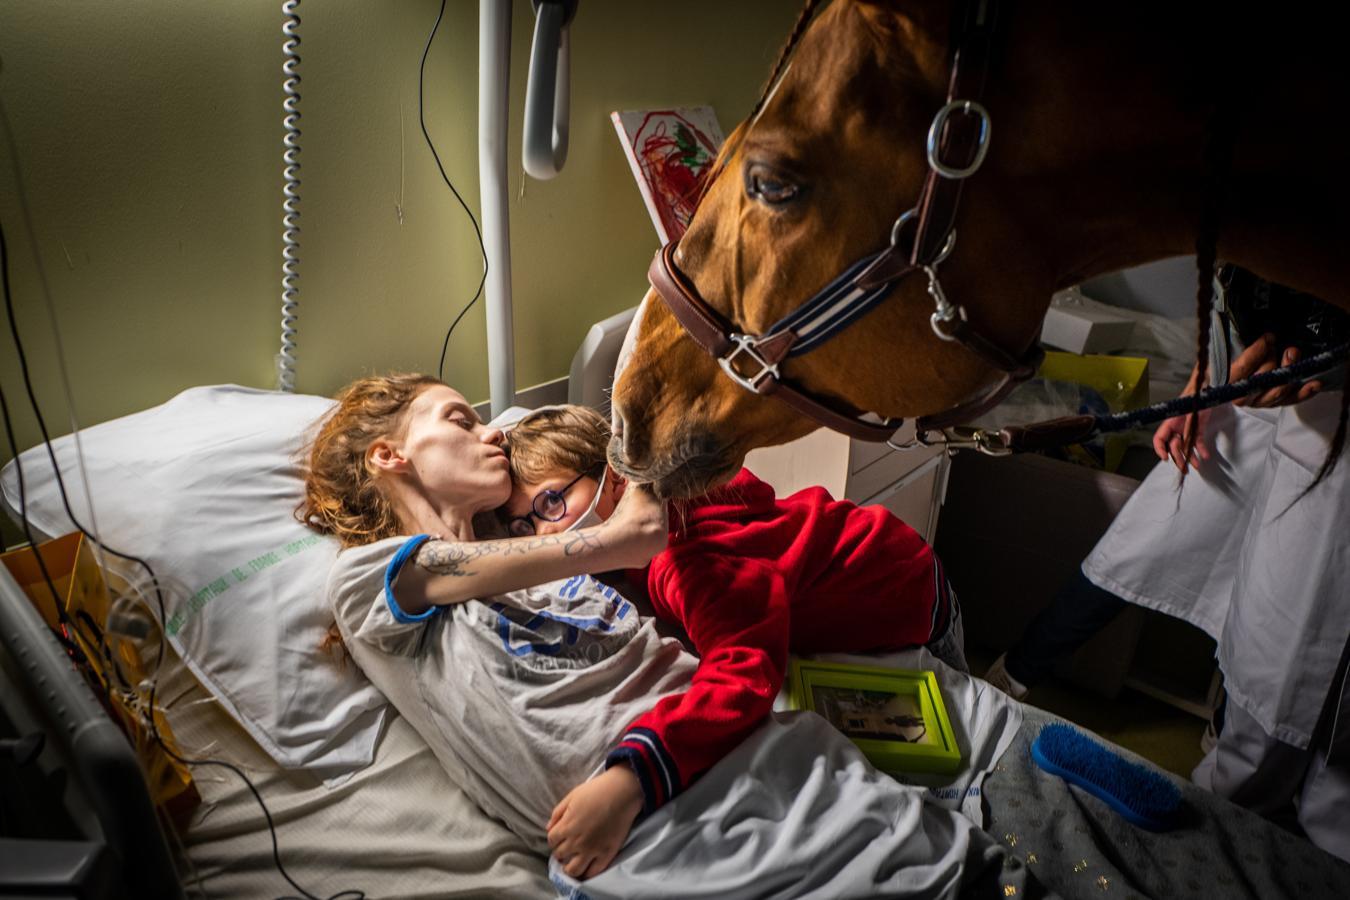 Una mujer con metástasis terminal abraza a su hijo en un hotel de Francia. Junto a ellos un caballo utilizado a modo de terapia. Nominada en la categoría de temas contemporáneos. 